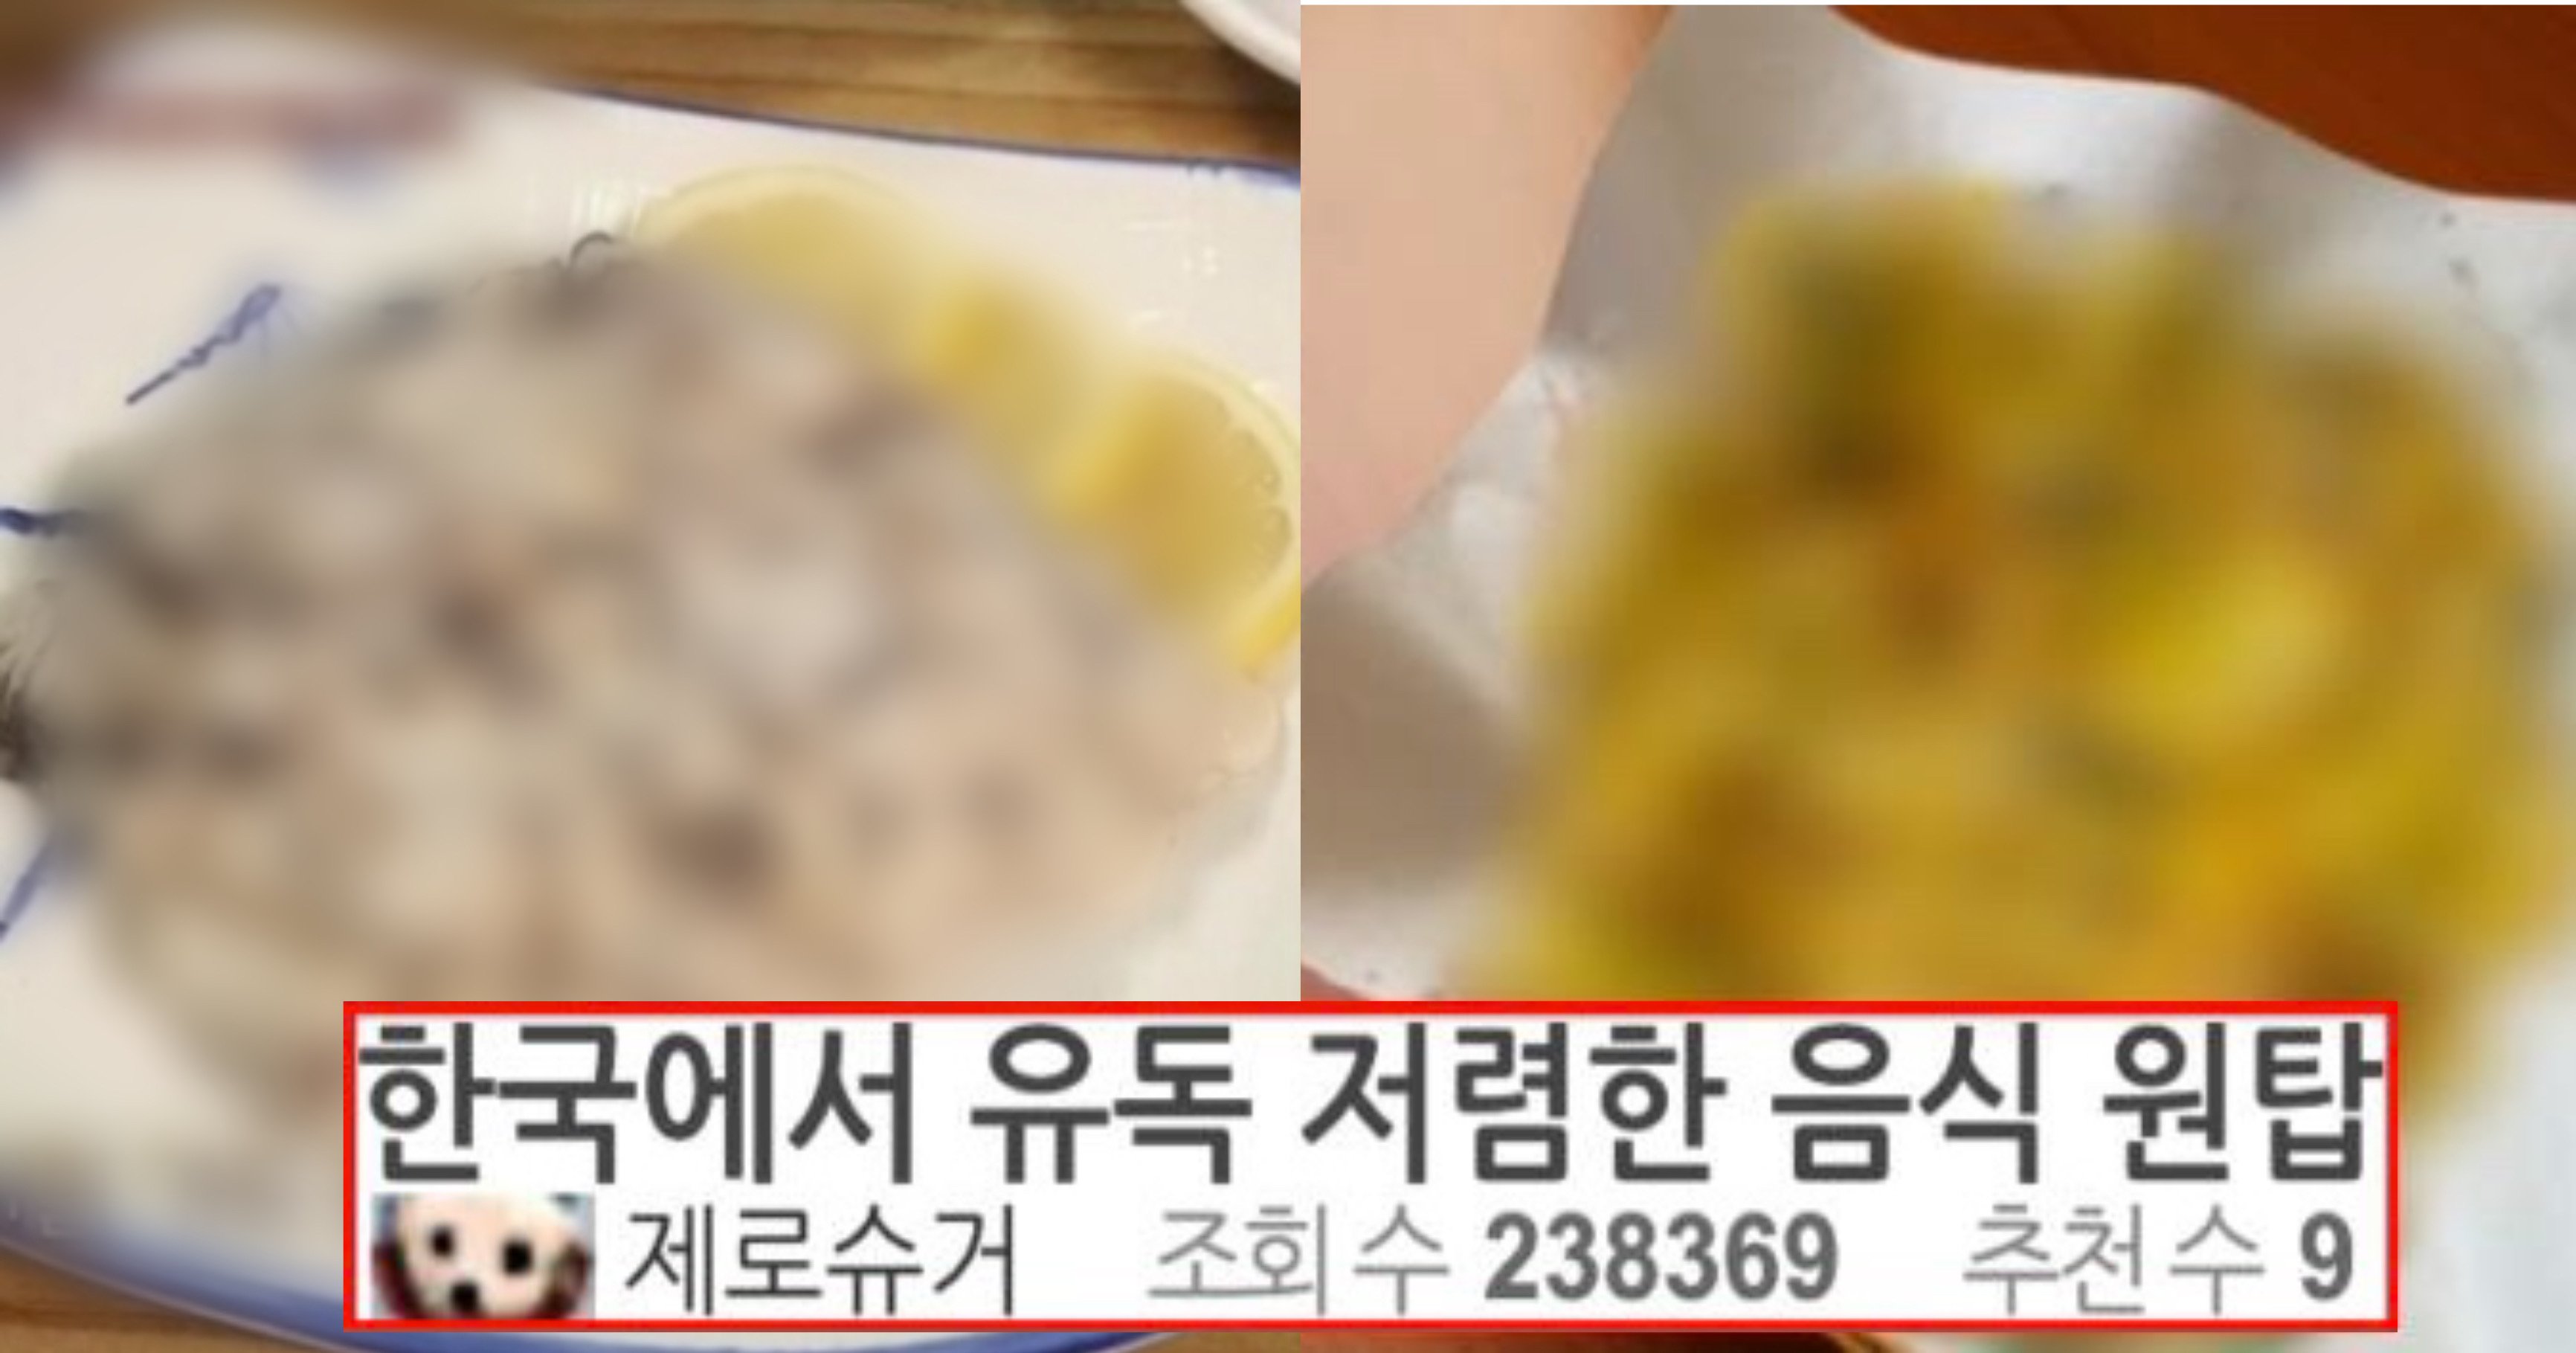 ff0ed498 bb8e 46a6 afdc 35823de8cb87.jpeg?resize=412,232 - "이 음식 좋아하는 사람?" 외국에서는 금 값인데 한국에서는 유독 저렴한 음식